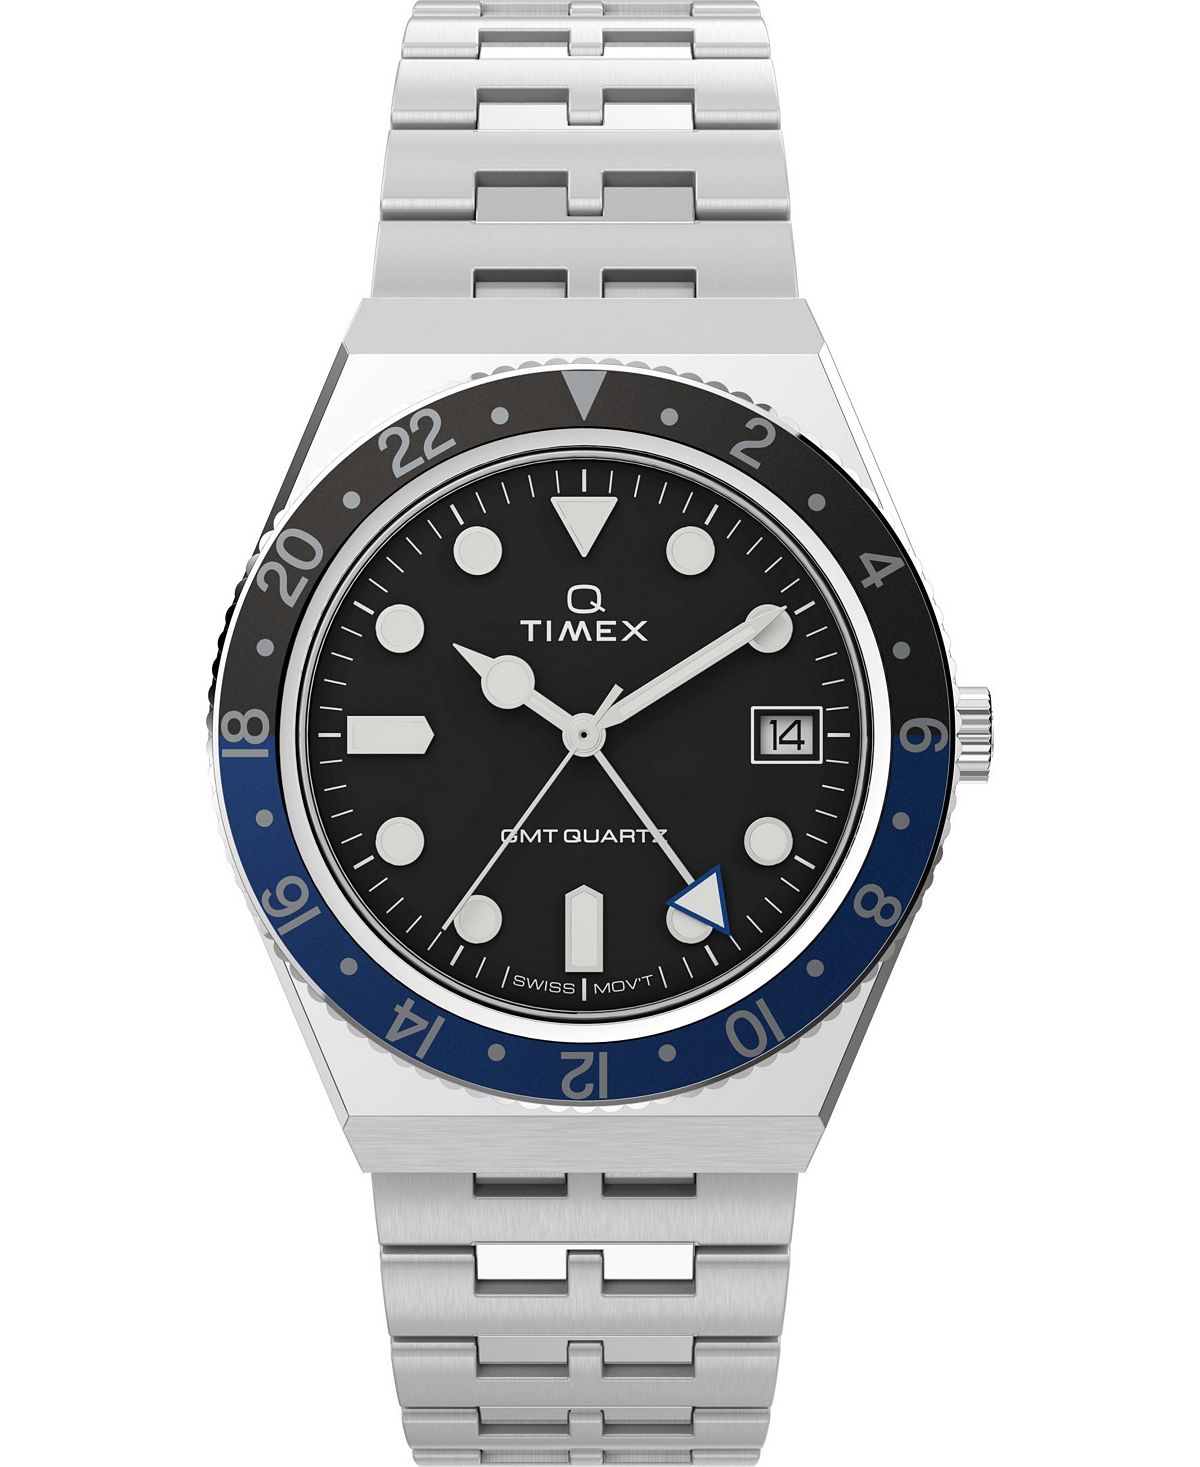 Мужские часы Q GMT с браслетом из нержавеющей стали, 38 мм Timex женские часы q серебристого цвета с браслетом из нержавеющей стали 36 мм timex